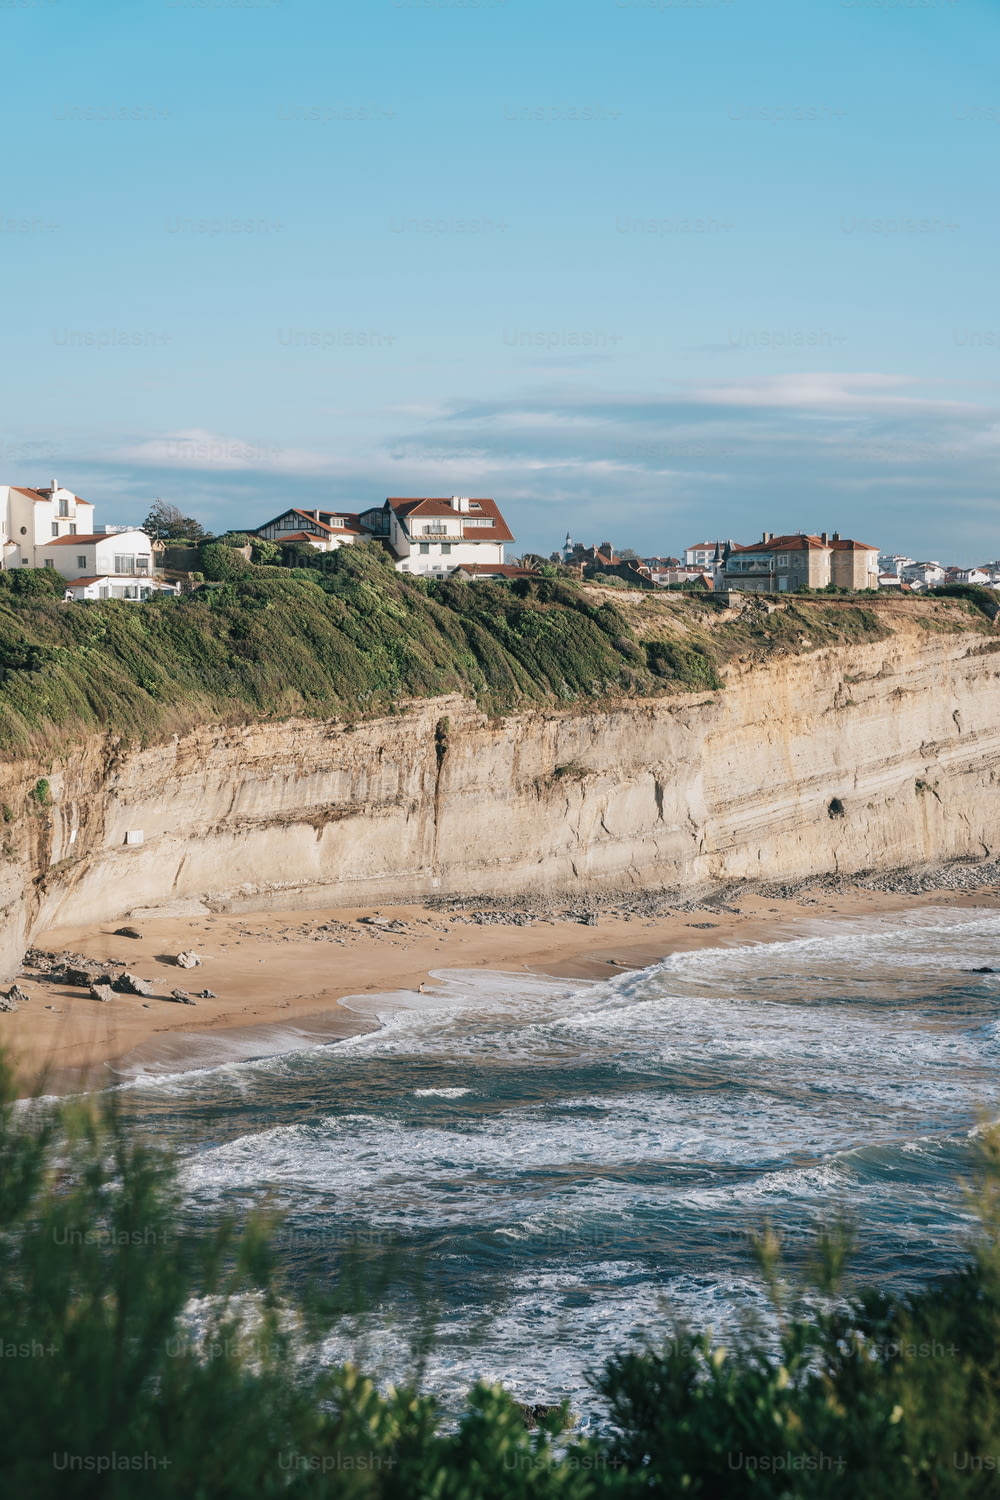 une vue d’une plage avec des maisons sur la falaise